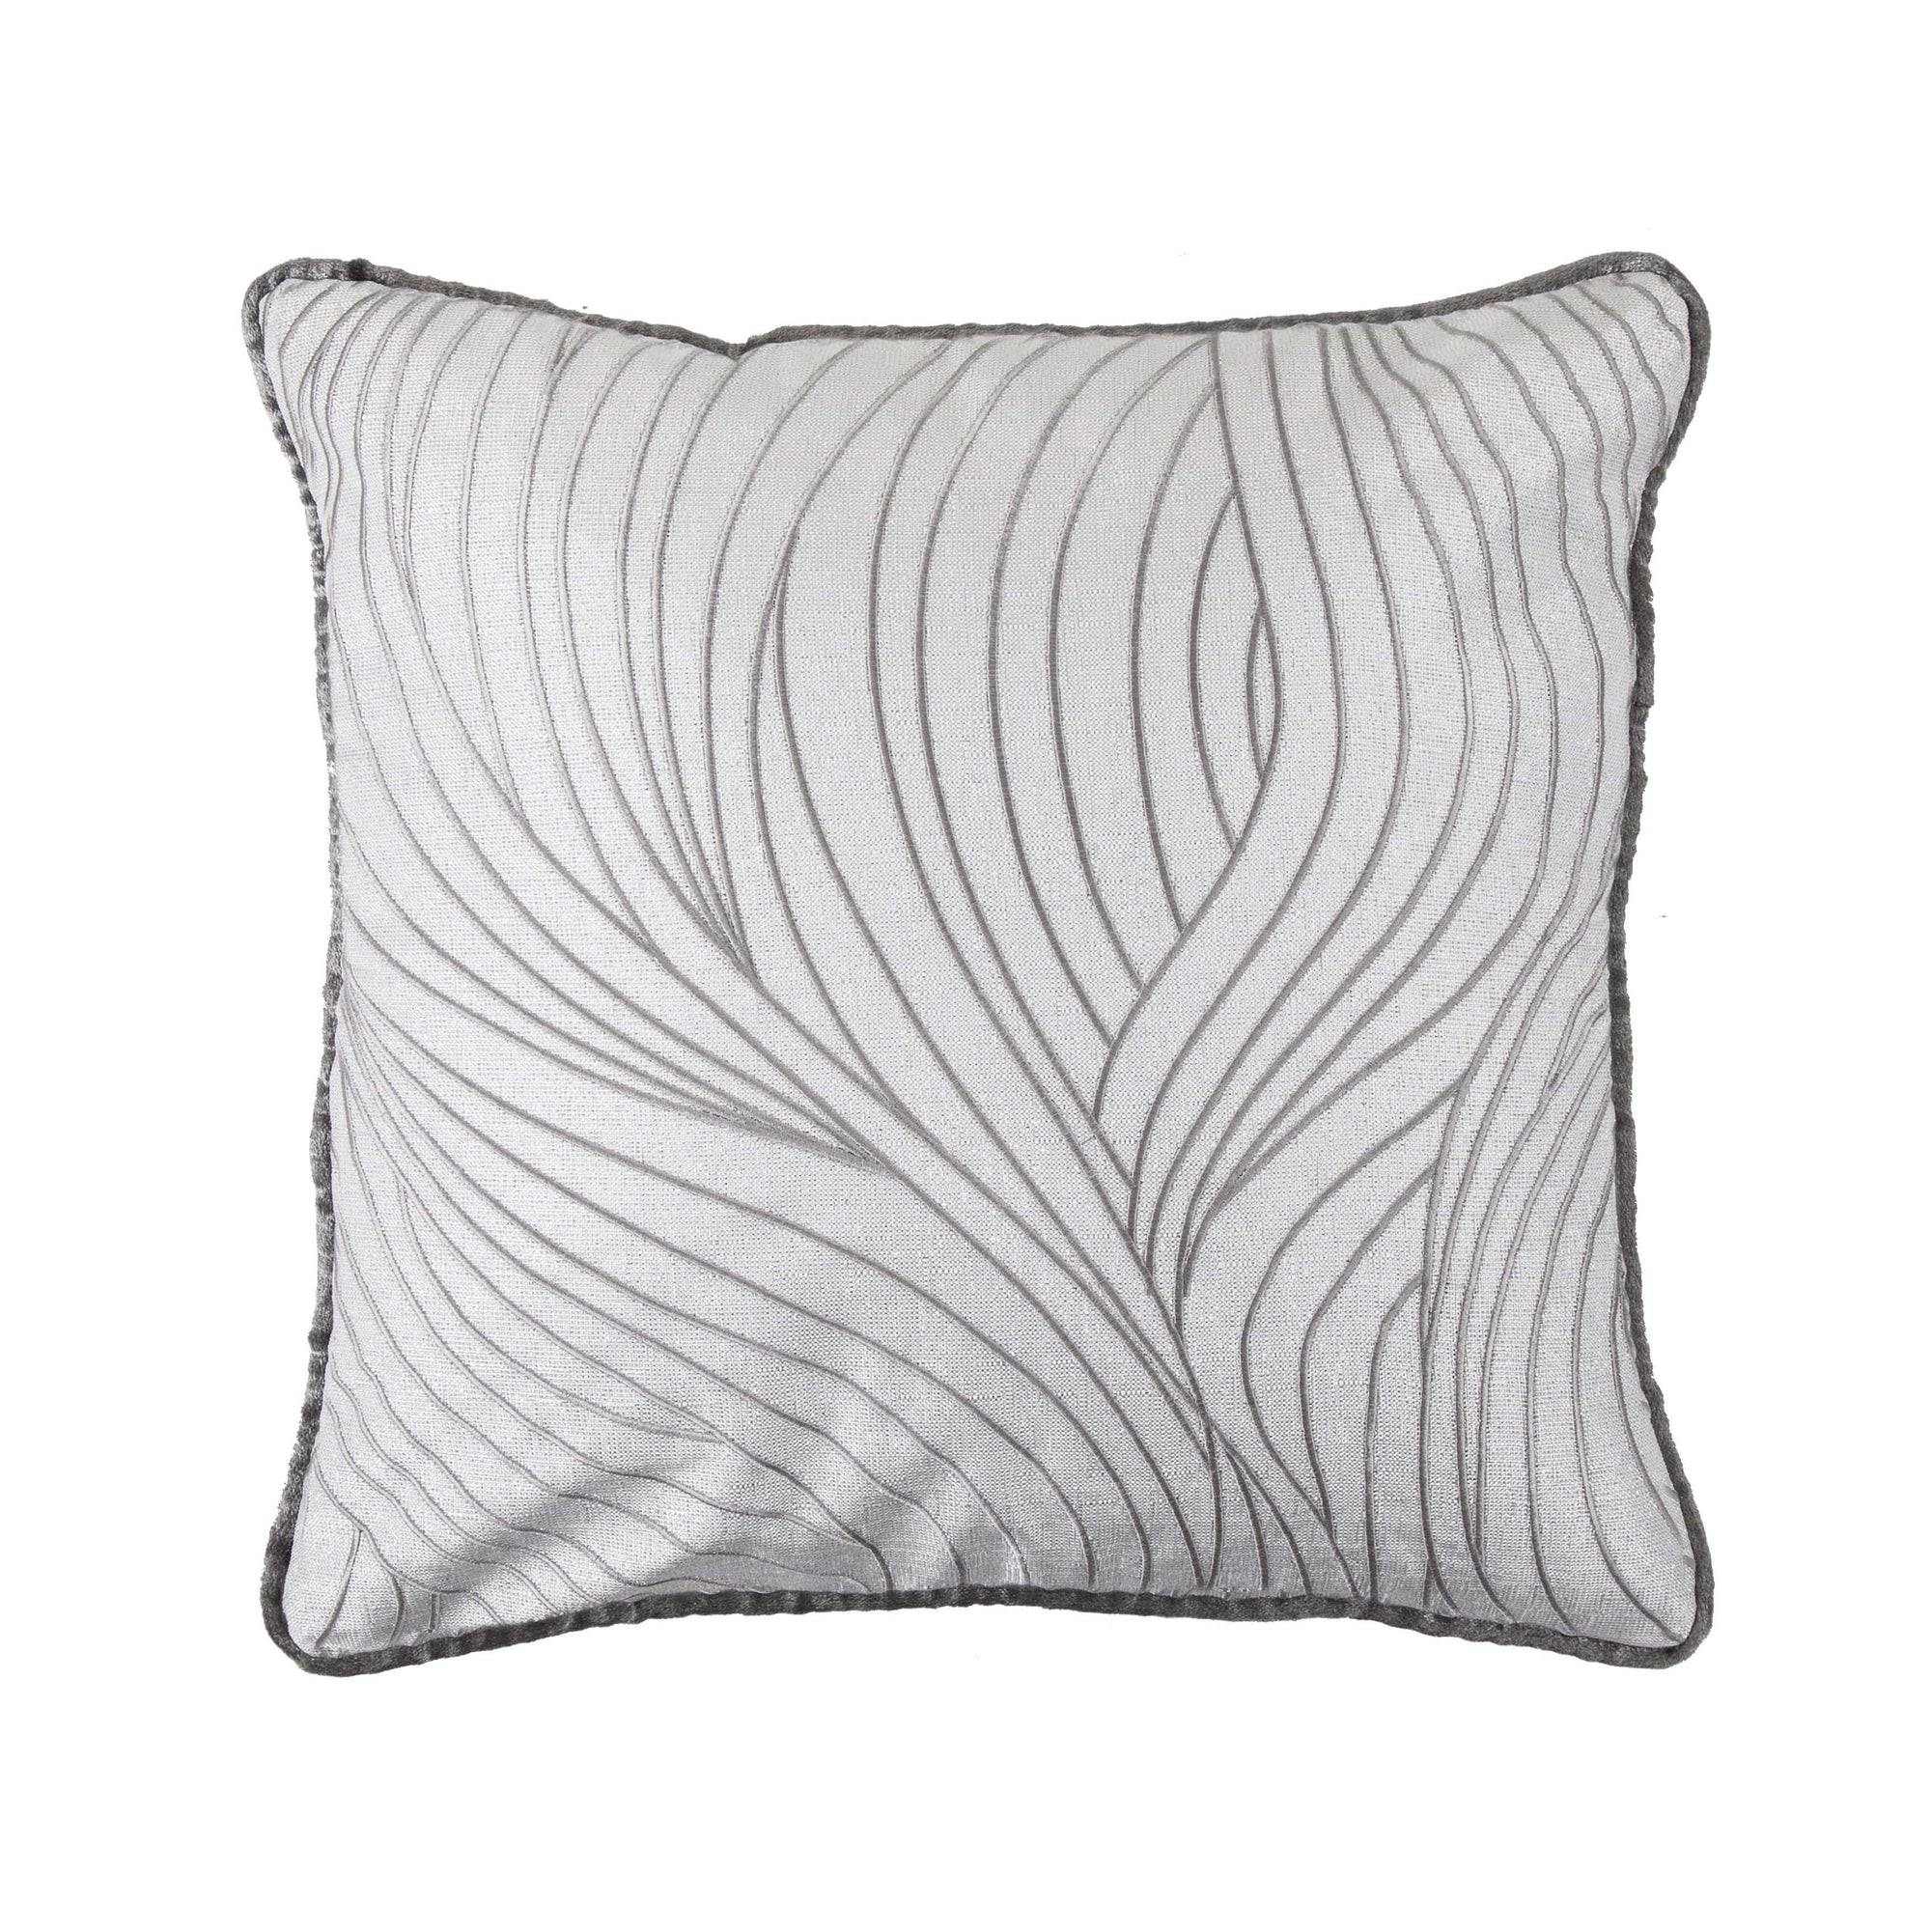 Celeste Wave Reversible Soft Velvet Throw Pillow, 18x18 Pillow